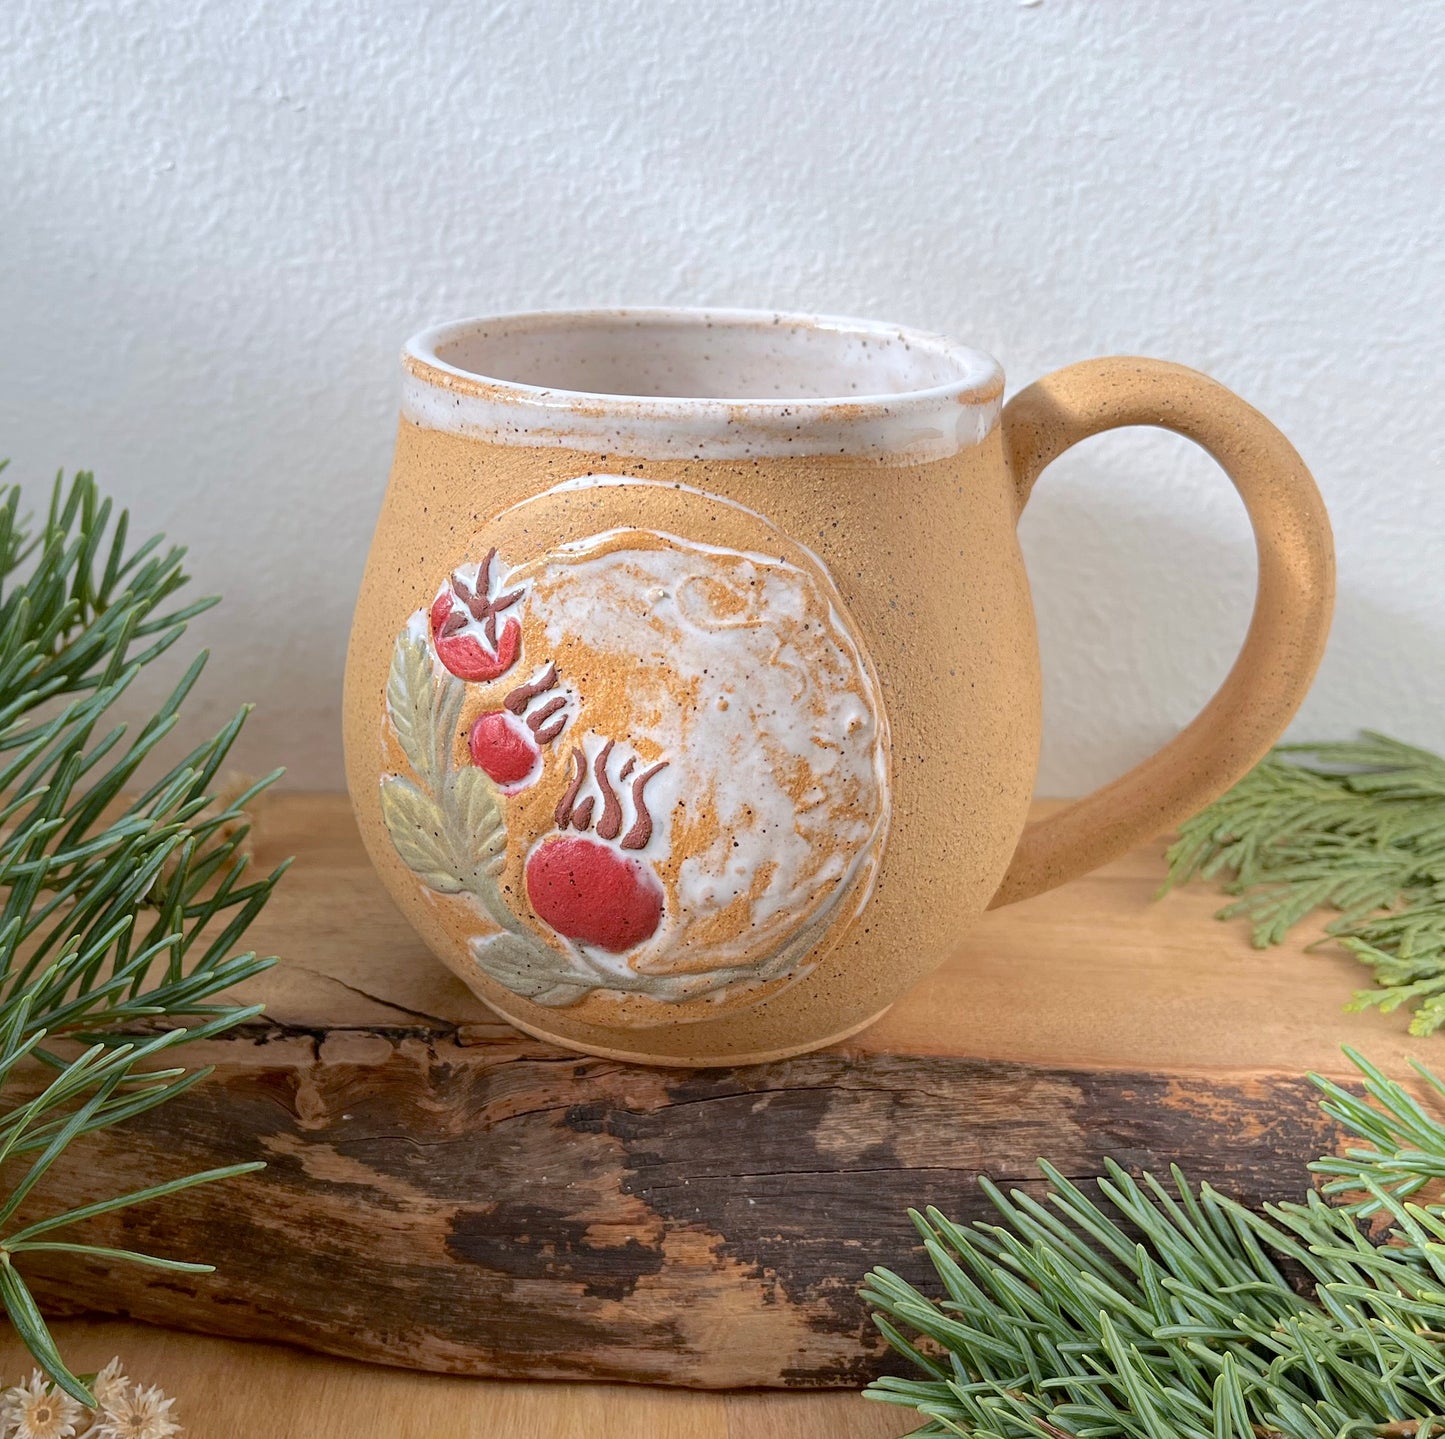 Winter Rose Hips Mug - Handmade Ceramic Mug